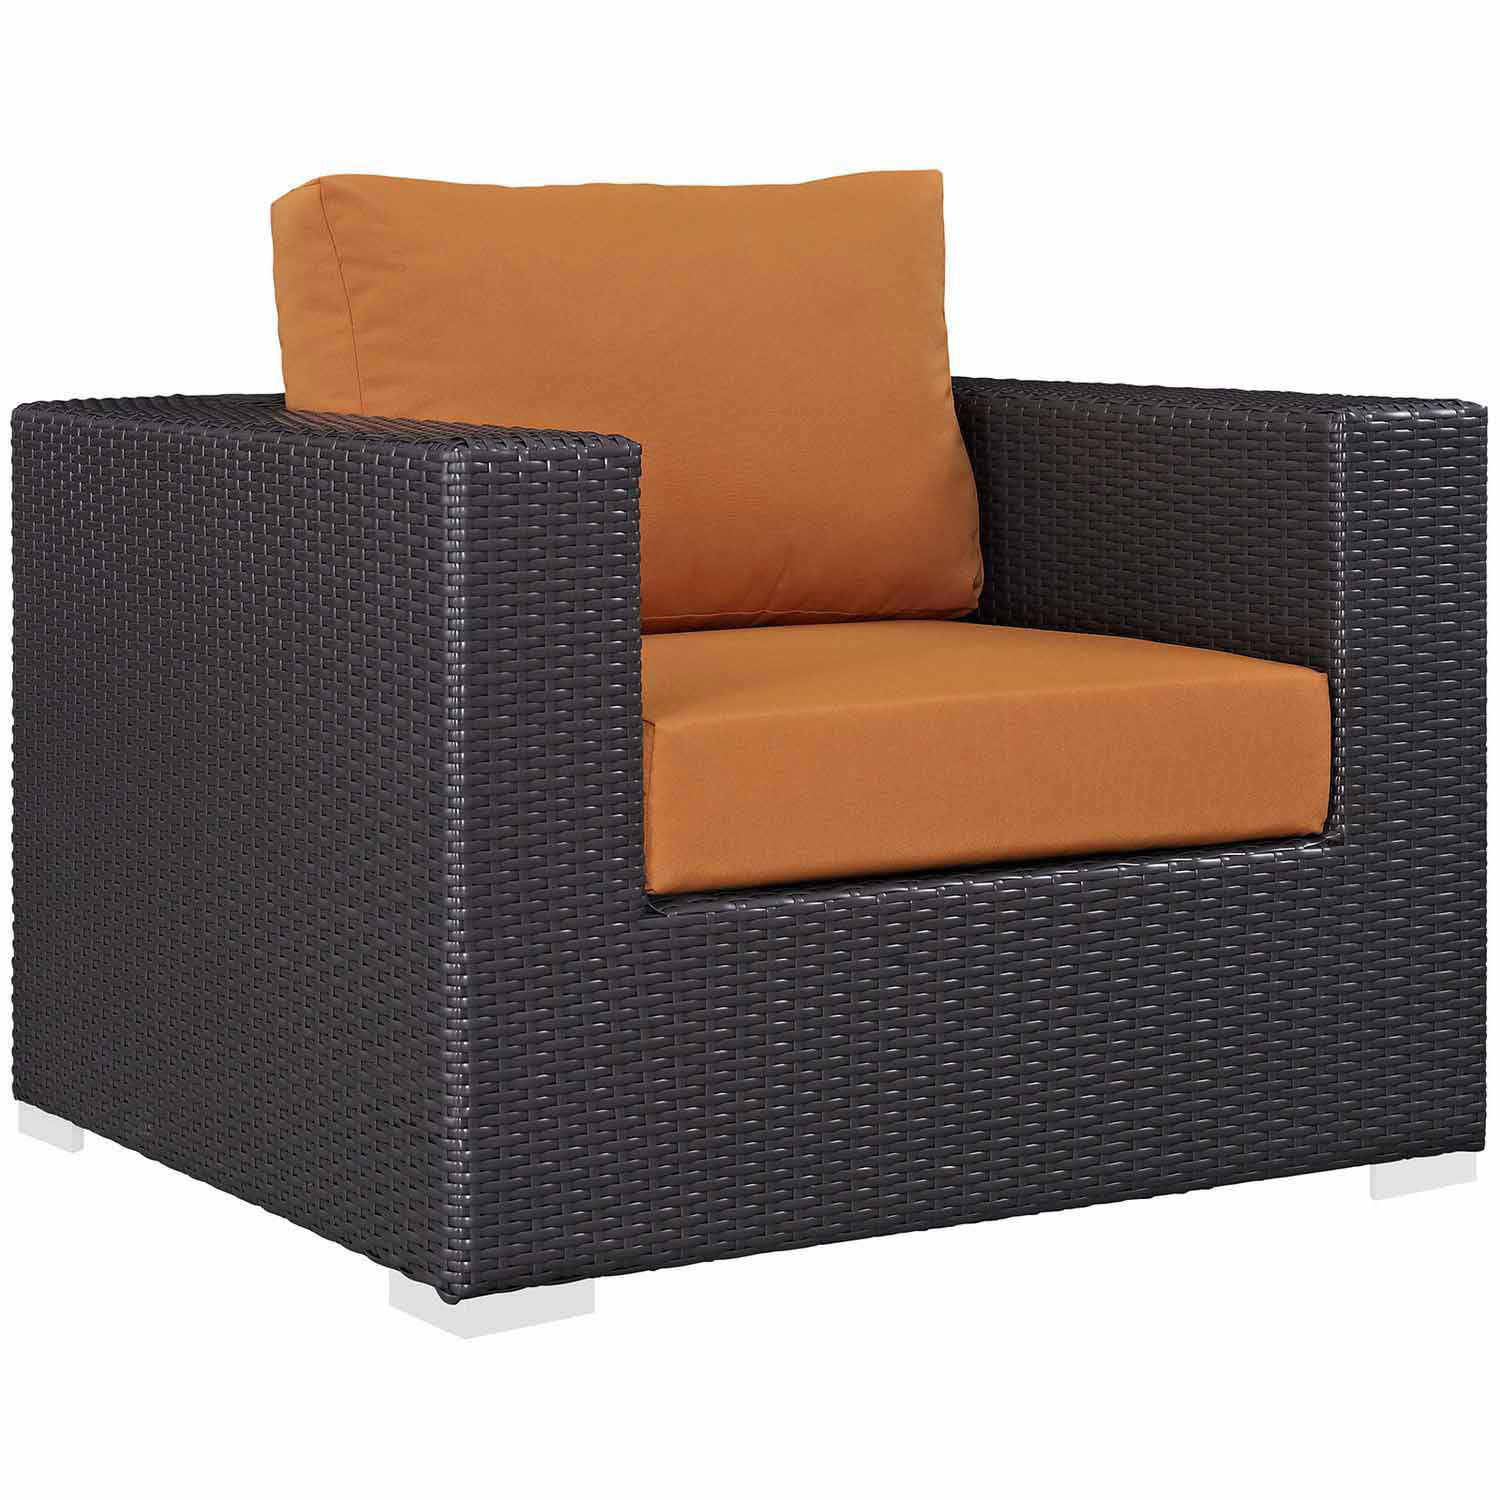 Modway Convene Outdoor Patio Arm Chair - Espresso Orange